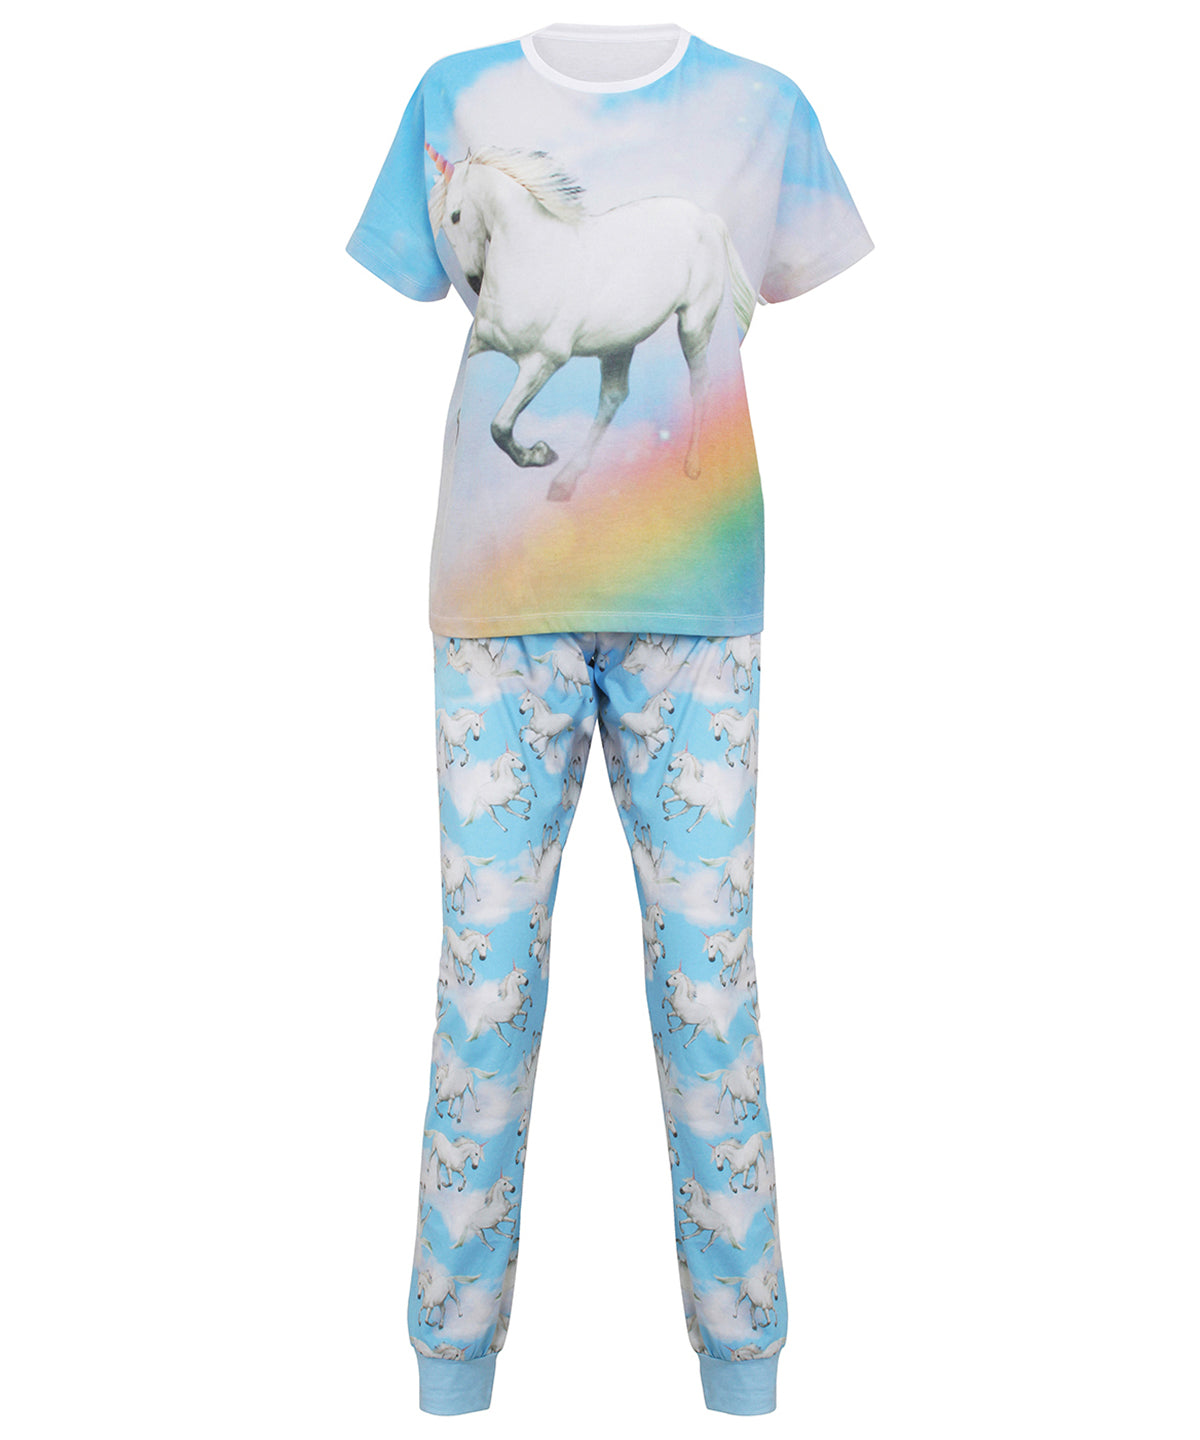 Náttföt - Unicorn Pyjamas